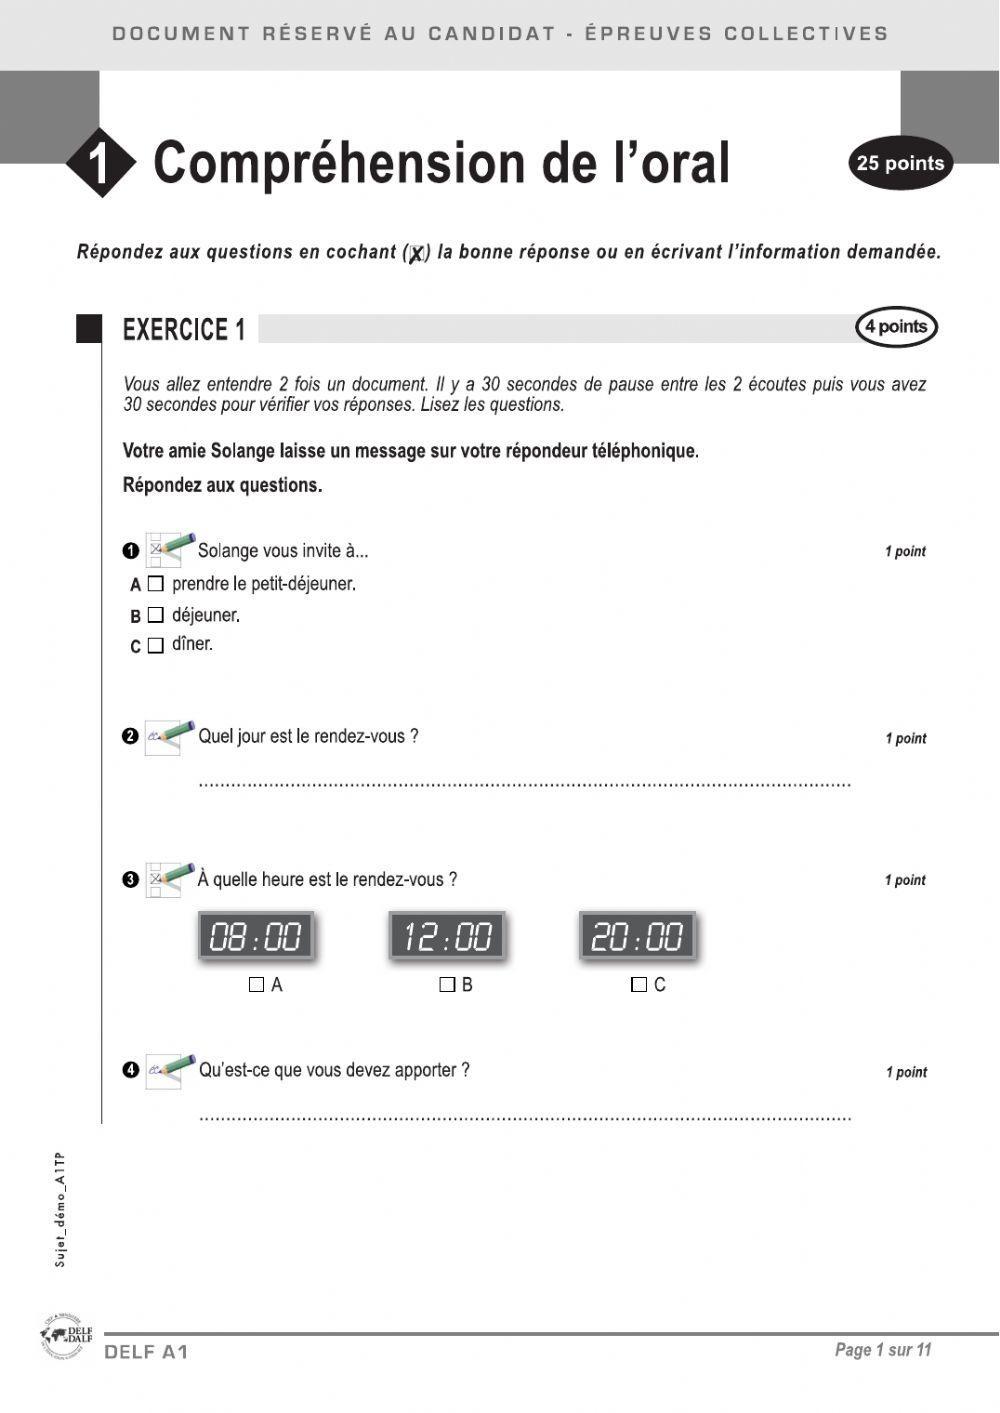 Compréhension orale DELF A1 (exemples) – aula de francès